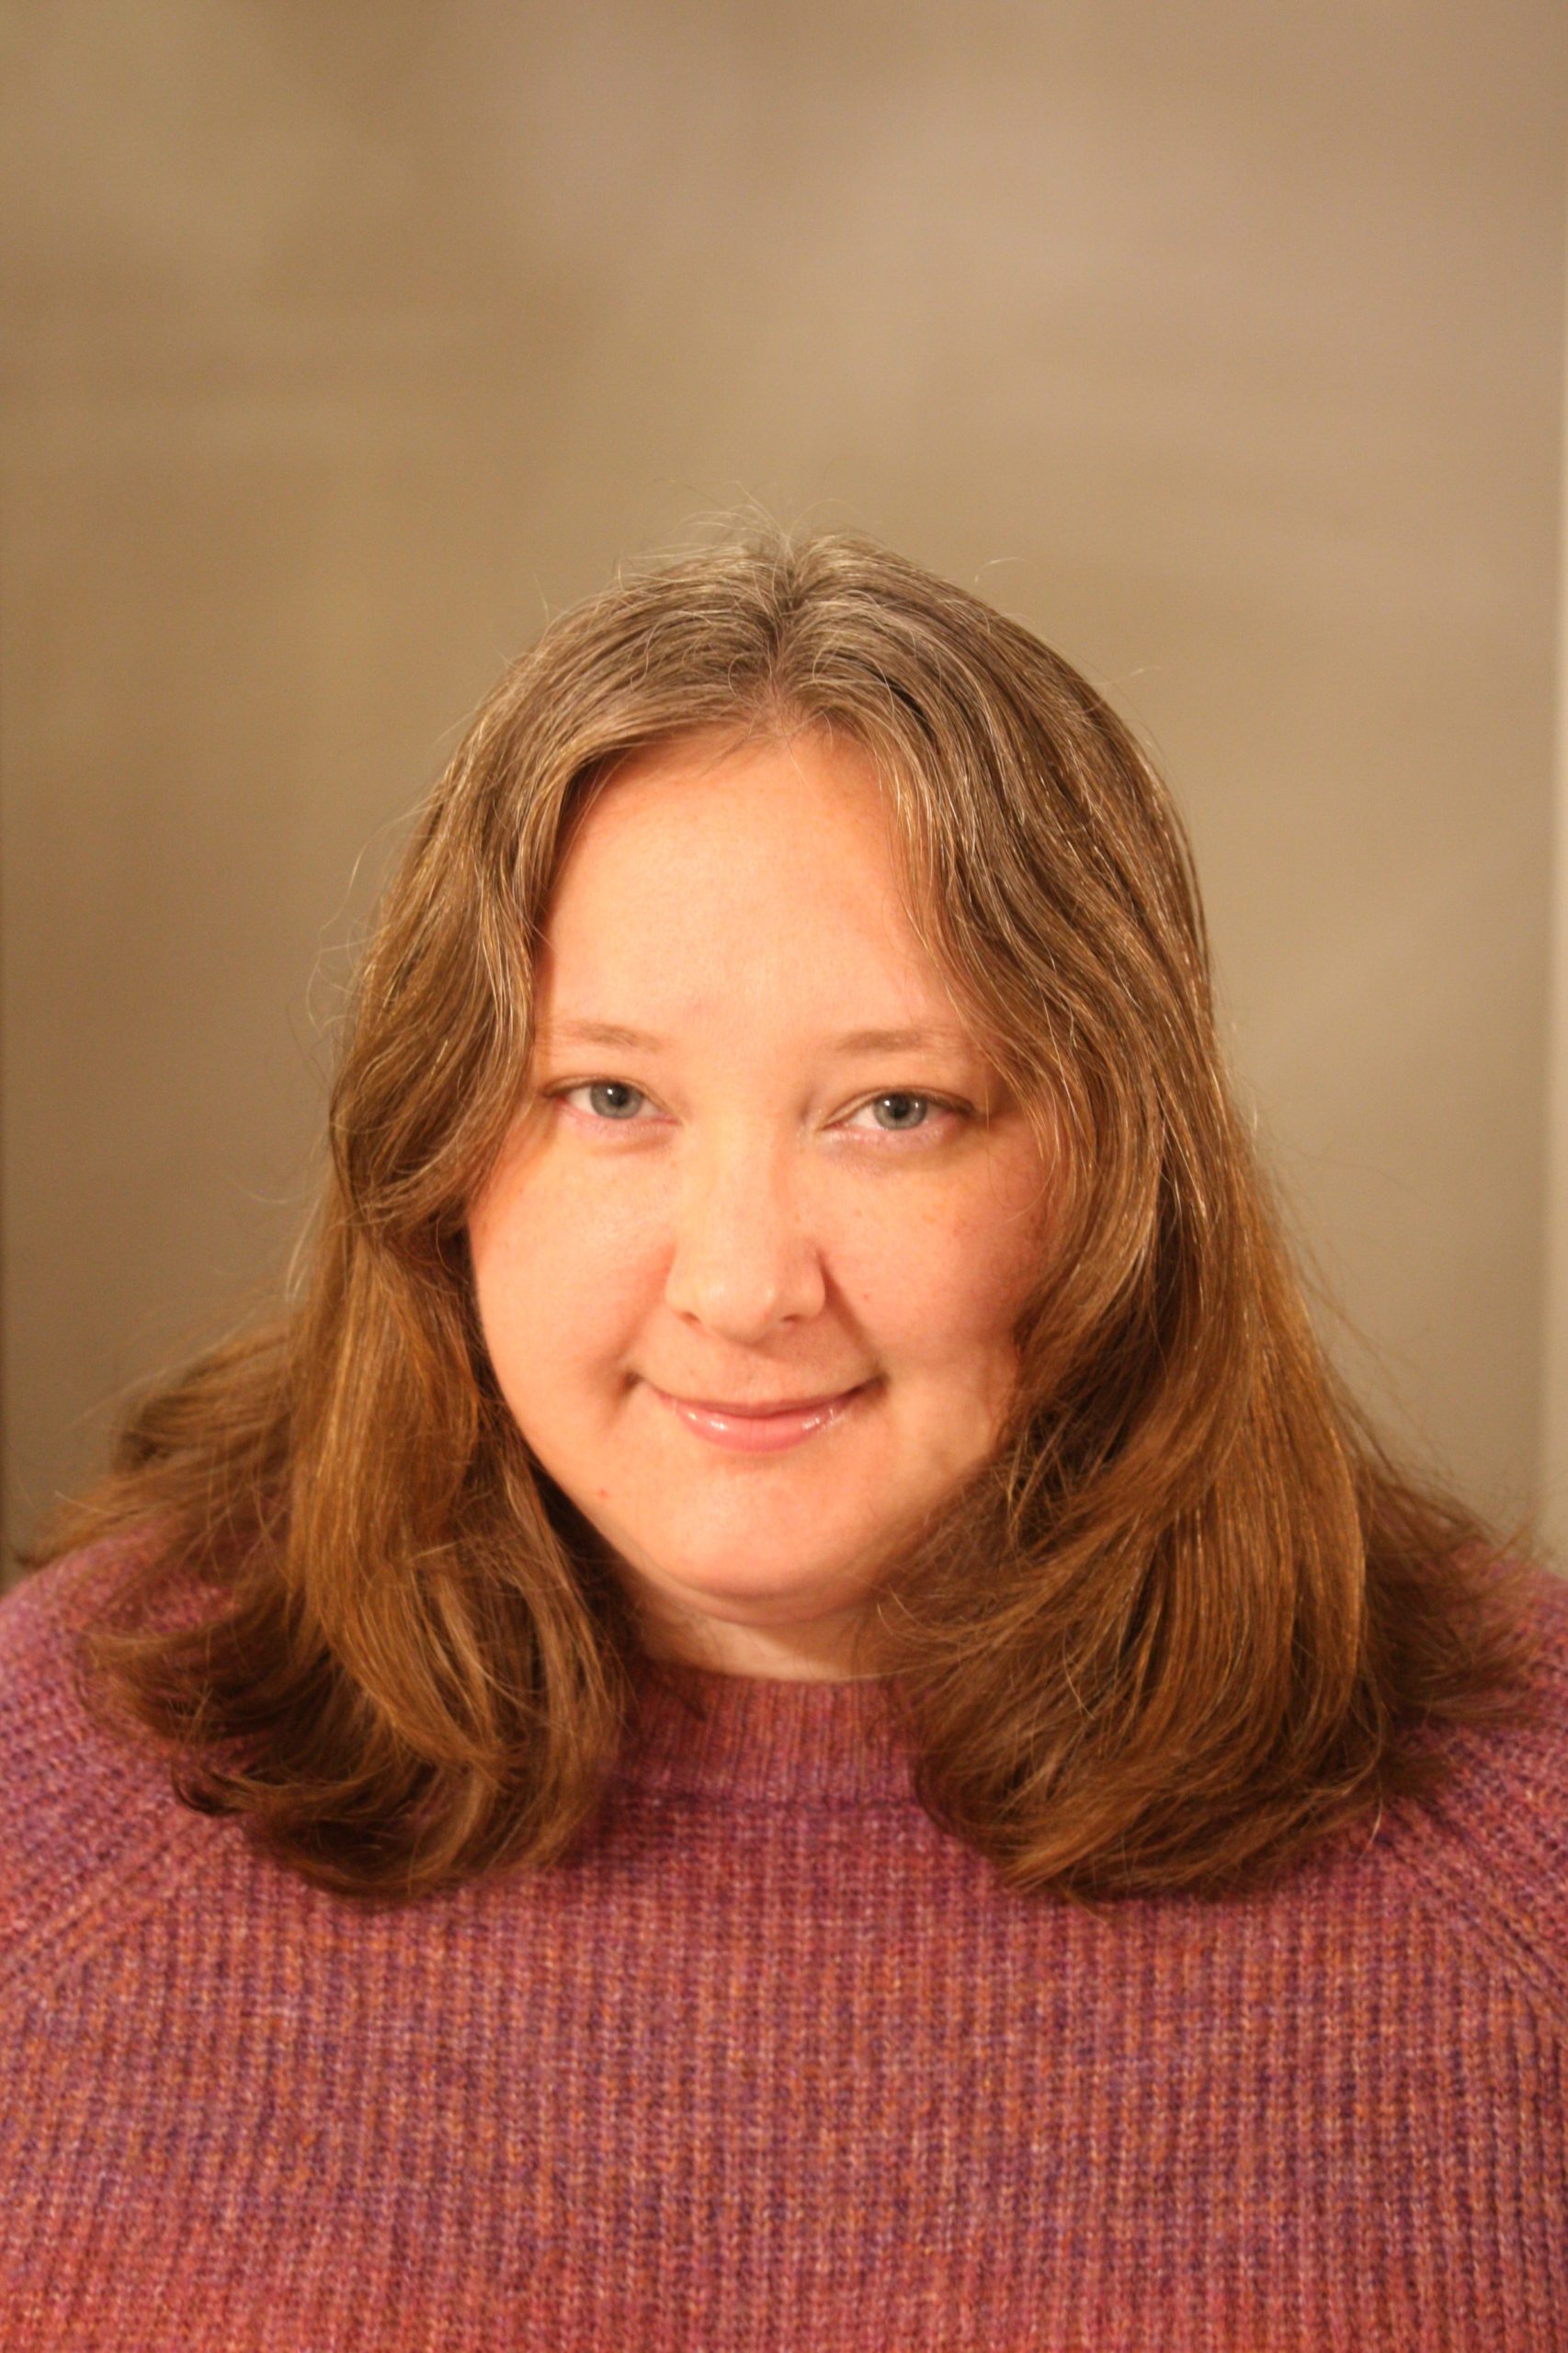 Author Emily E. Jones